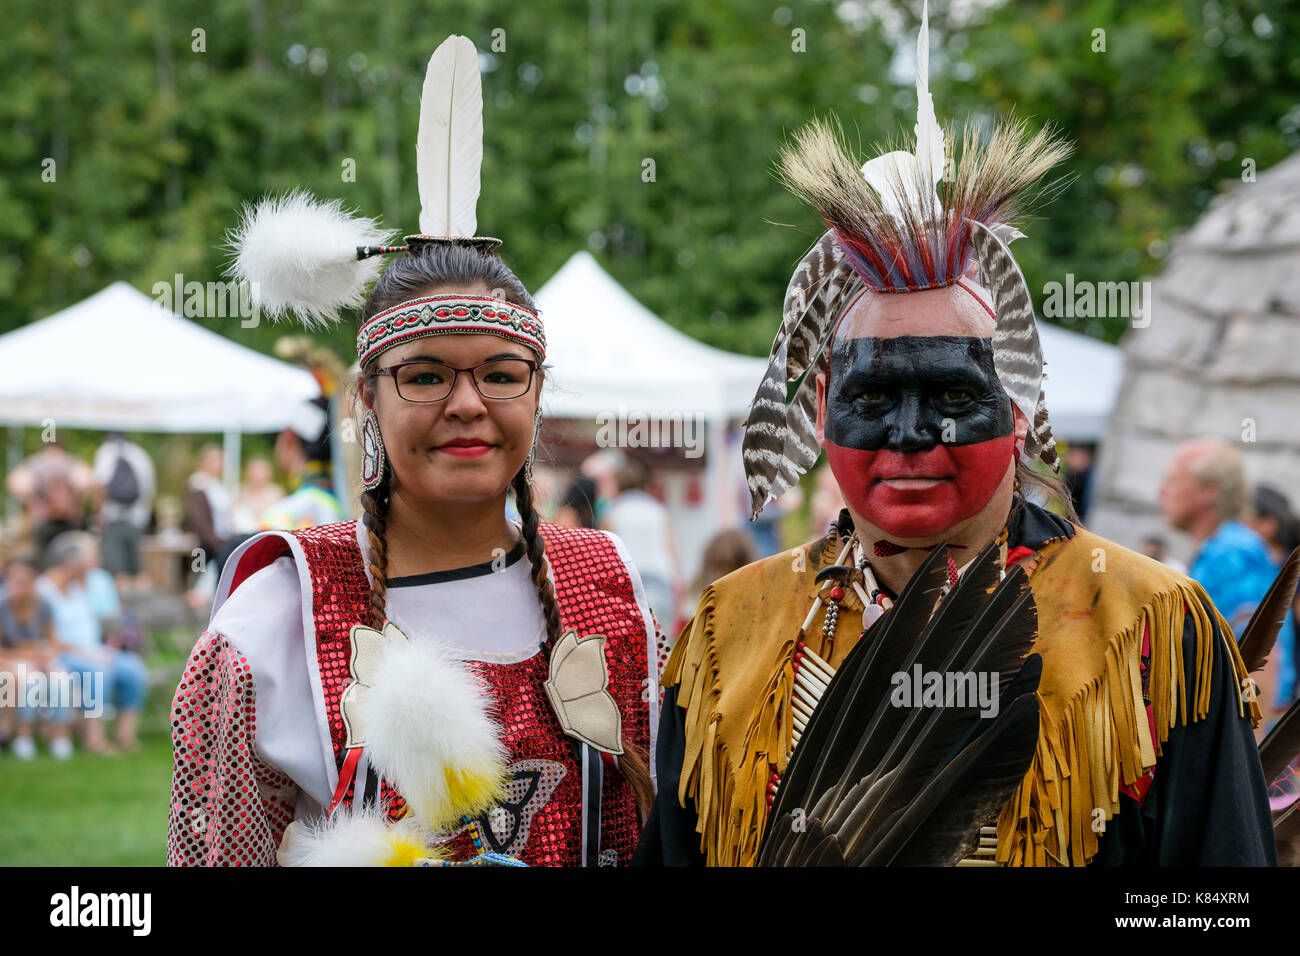 Las primeras naciones canadienses par posando para un retrato vistiendo regalia tradicional Pow Wow durante un encuentro en Londres, Ontario, Canadá. Foto de stock